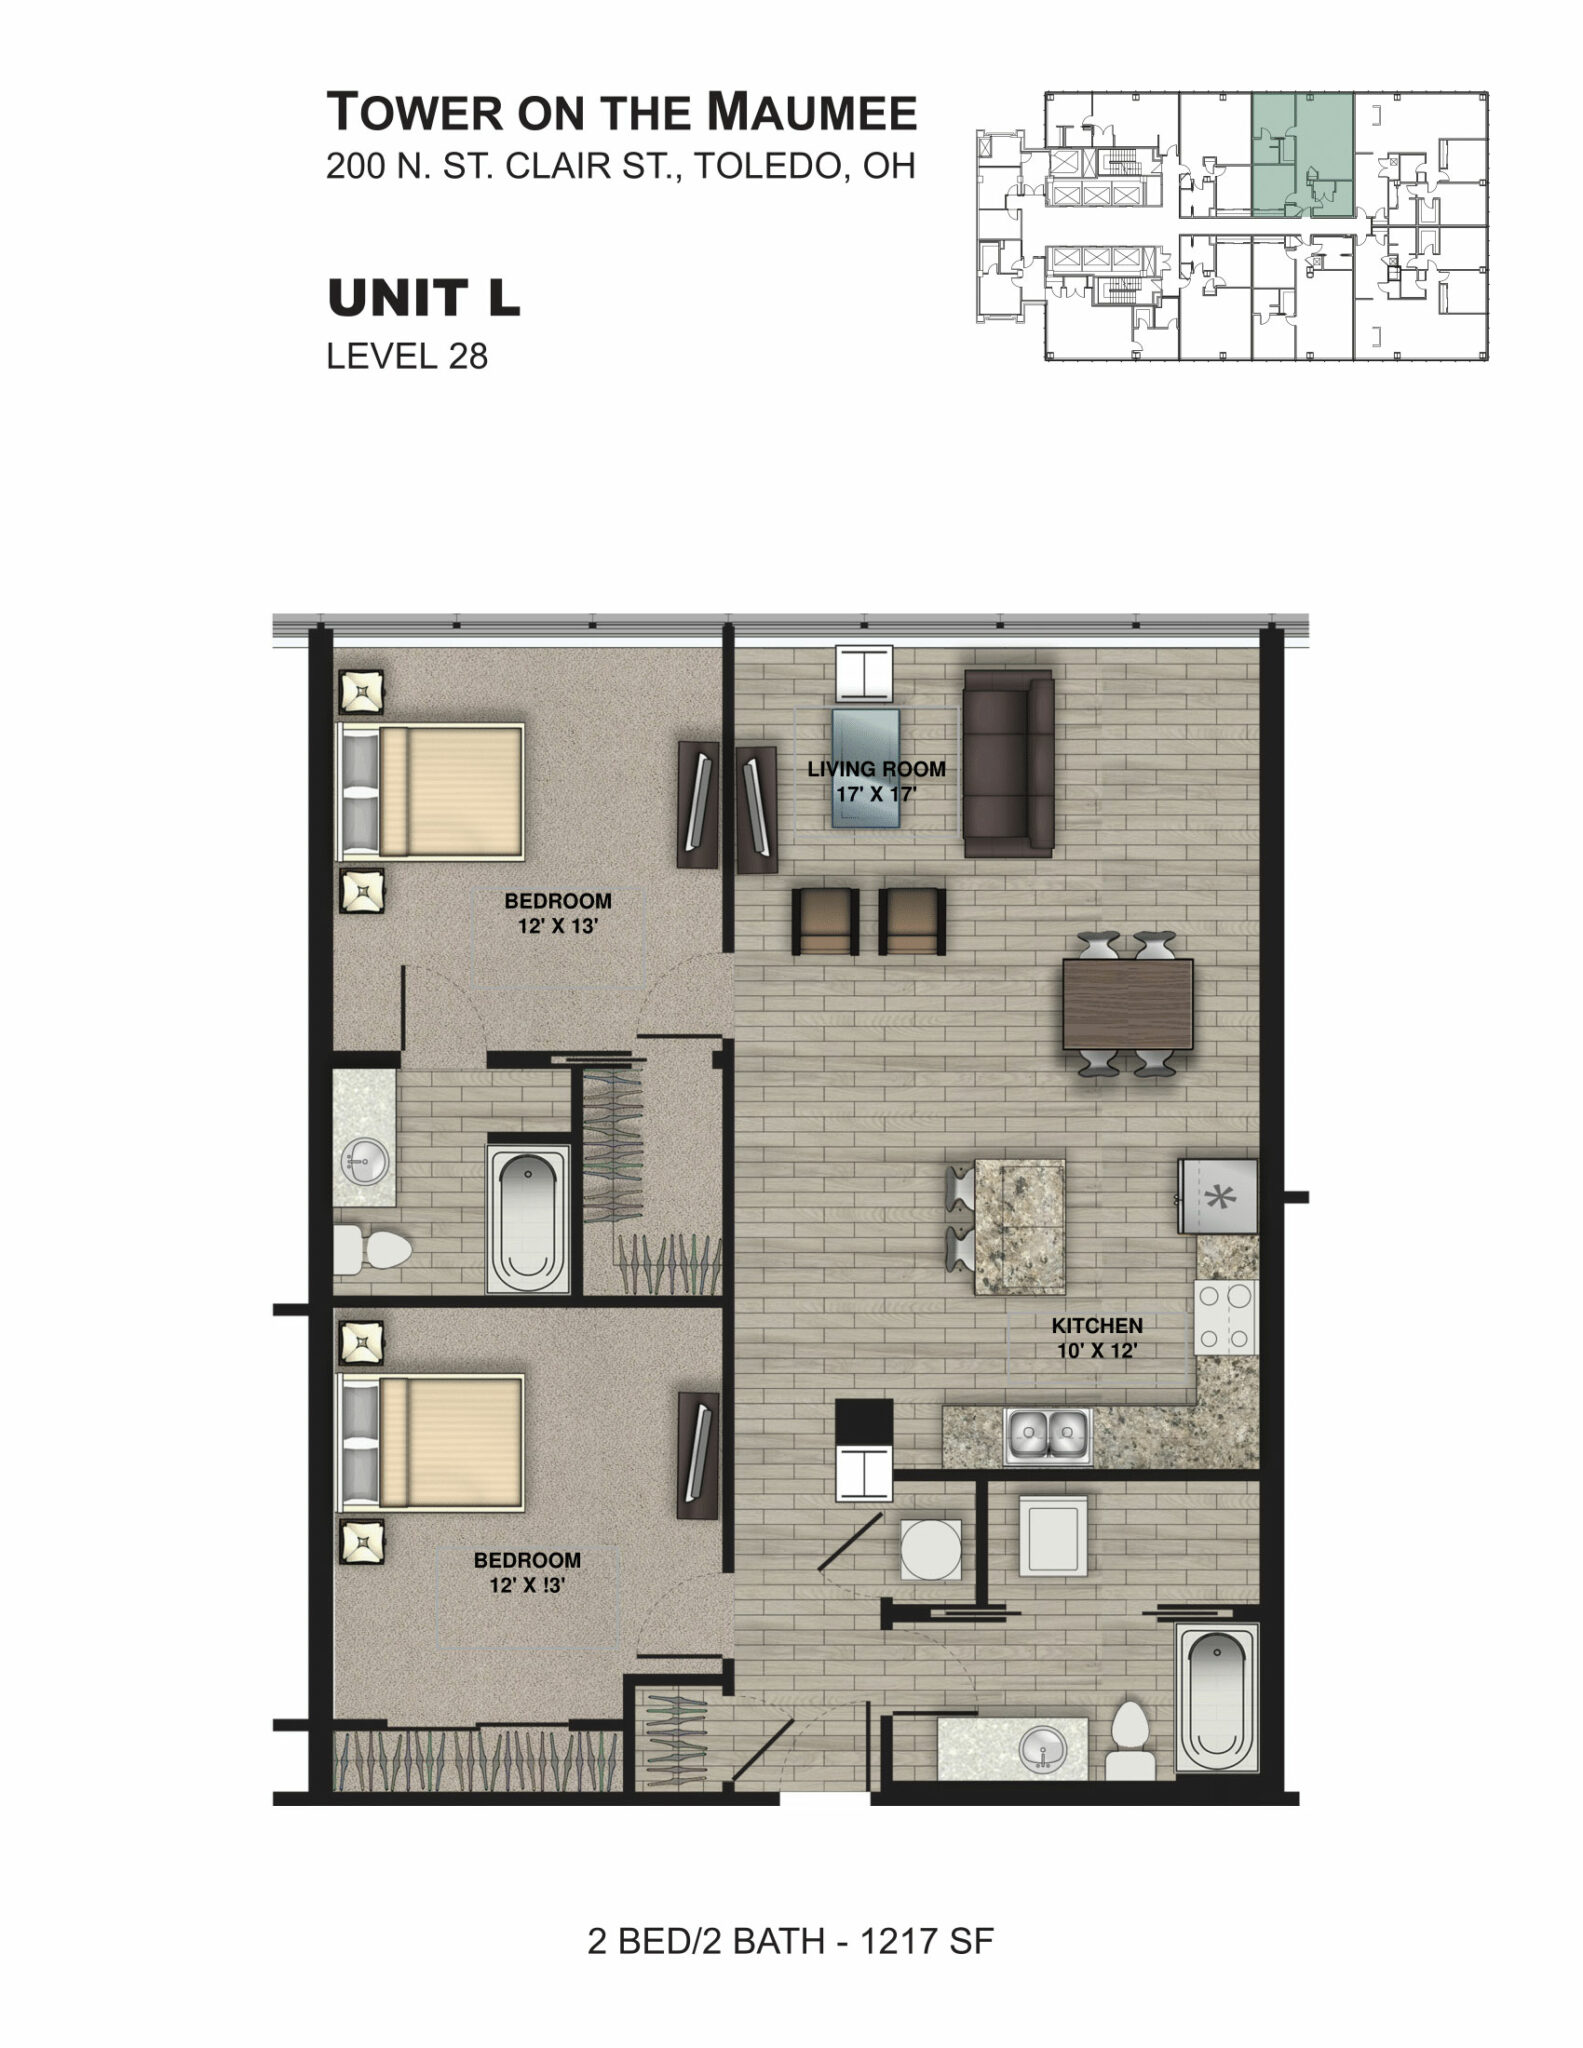 2 Bedroom Unit L 2D Floorplan, Tower on the Maumee, Toledo, OH